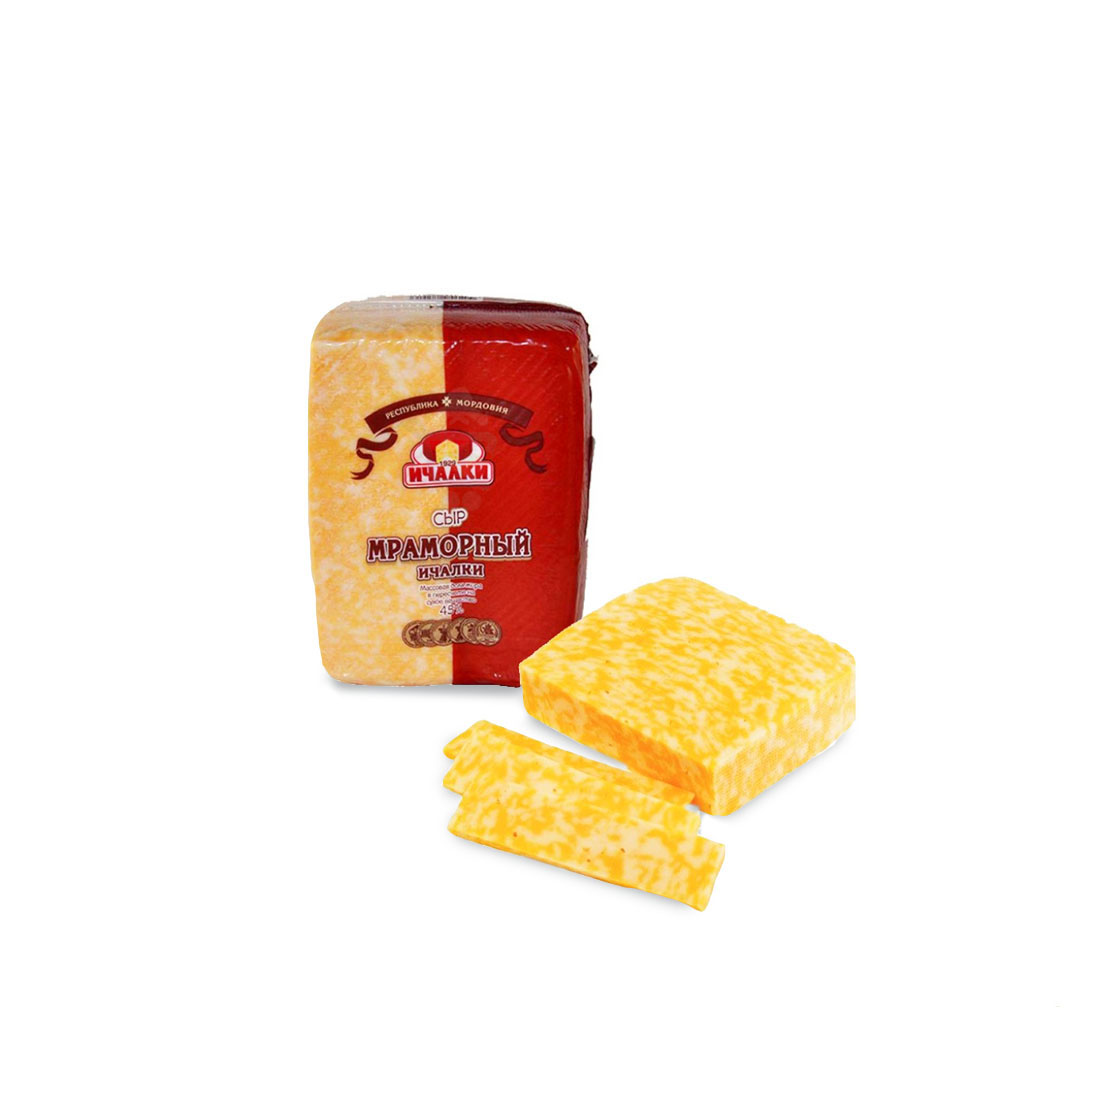 Сыр мраморный 45% (Ичалки)